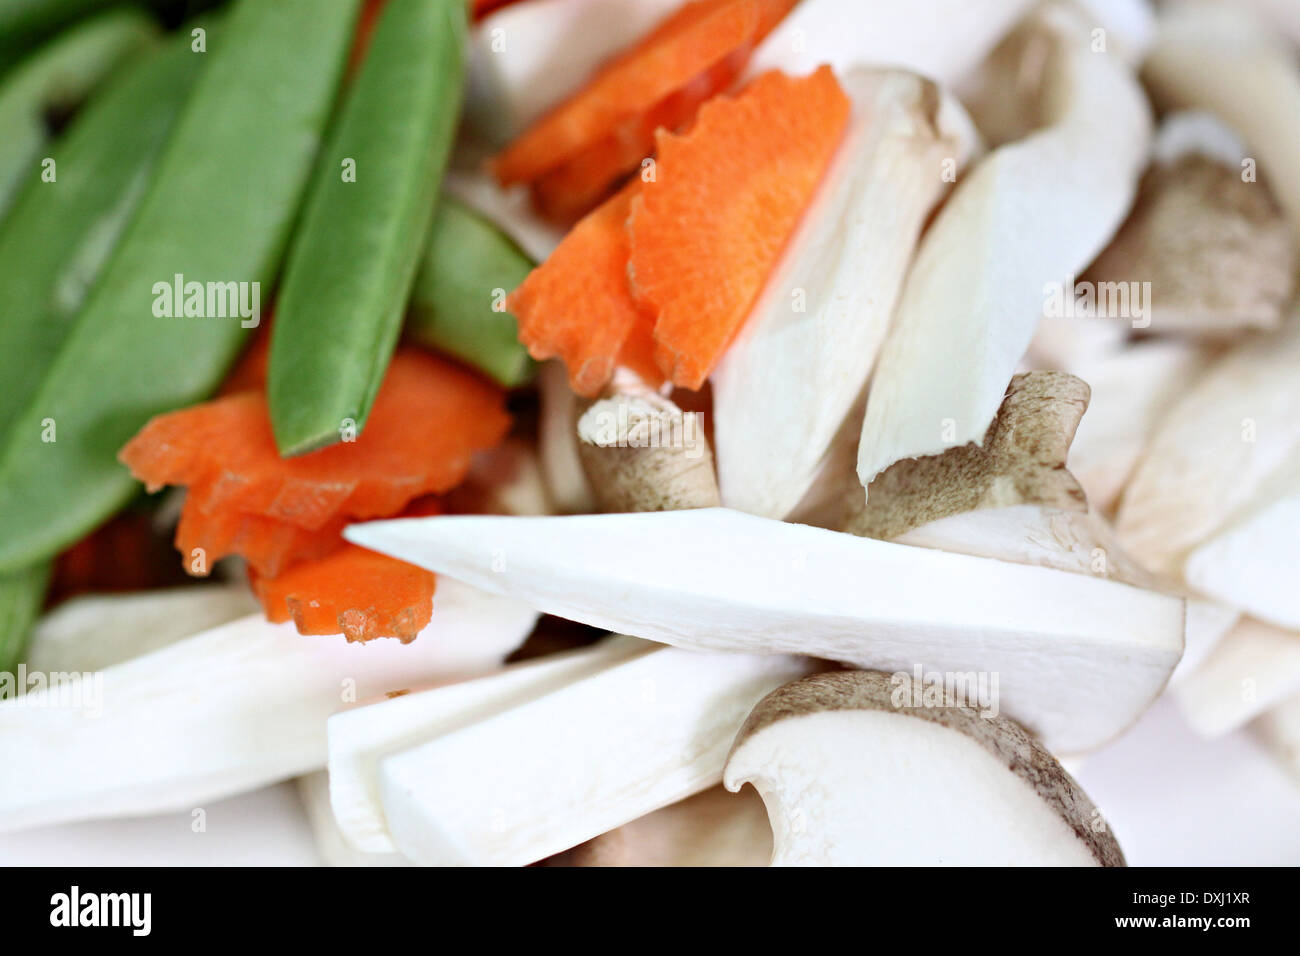 Les champignons, carottes et pois comme ingrédient dans la cuisine. Banque D'Images